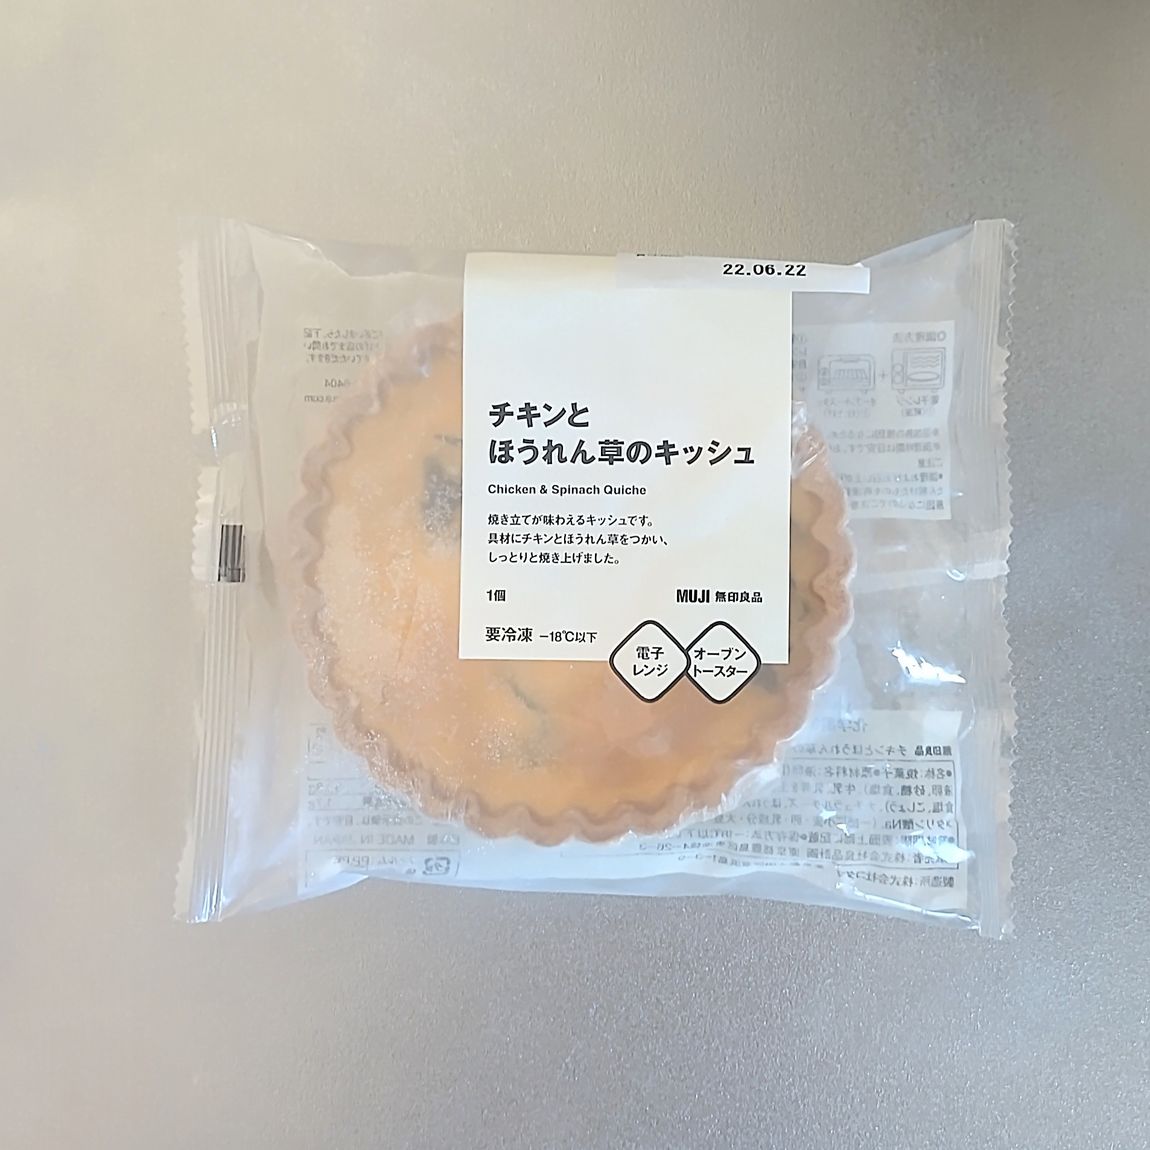 【ゆめタウン福山】キッシュの冷凍食品